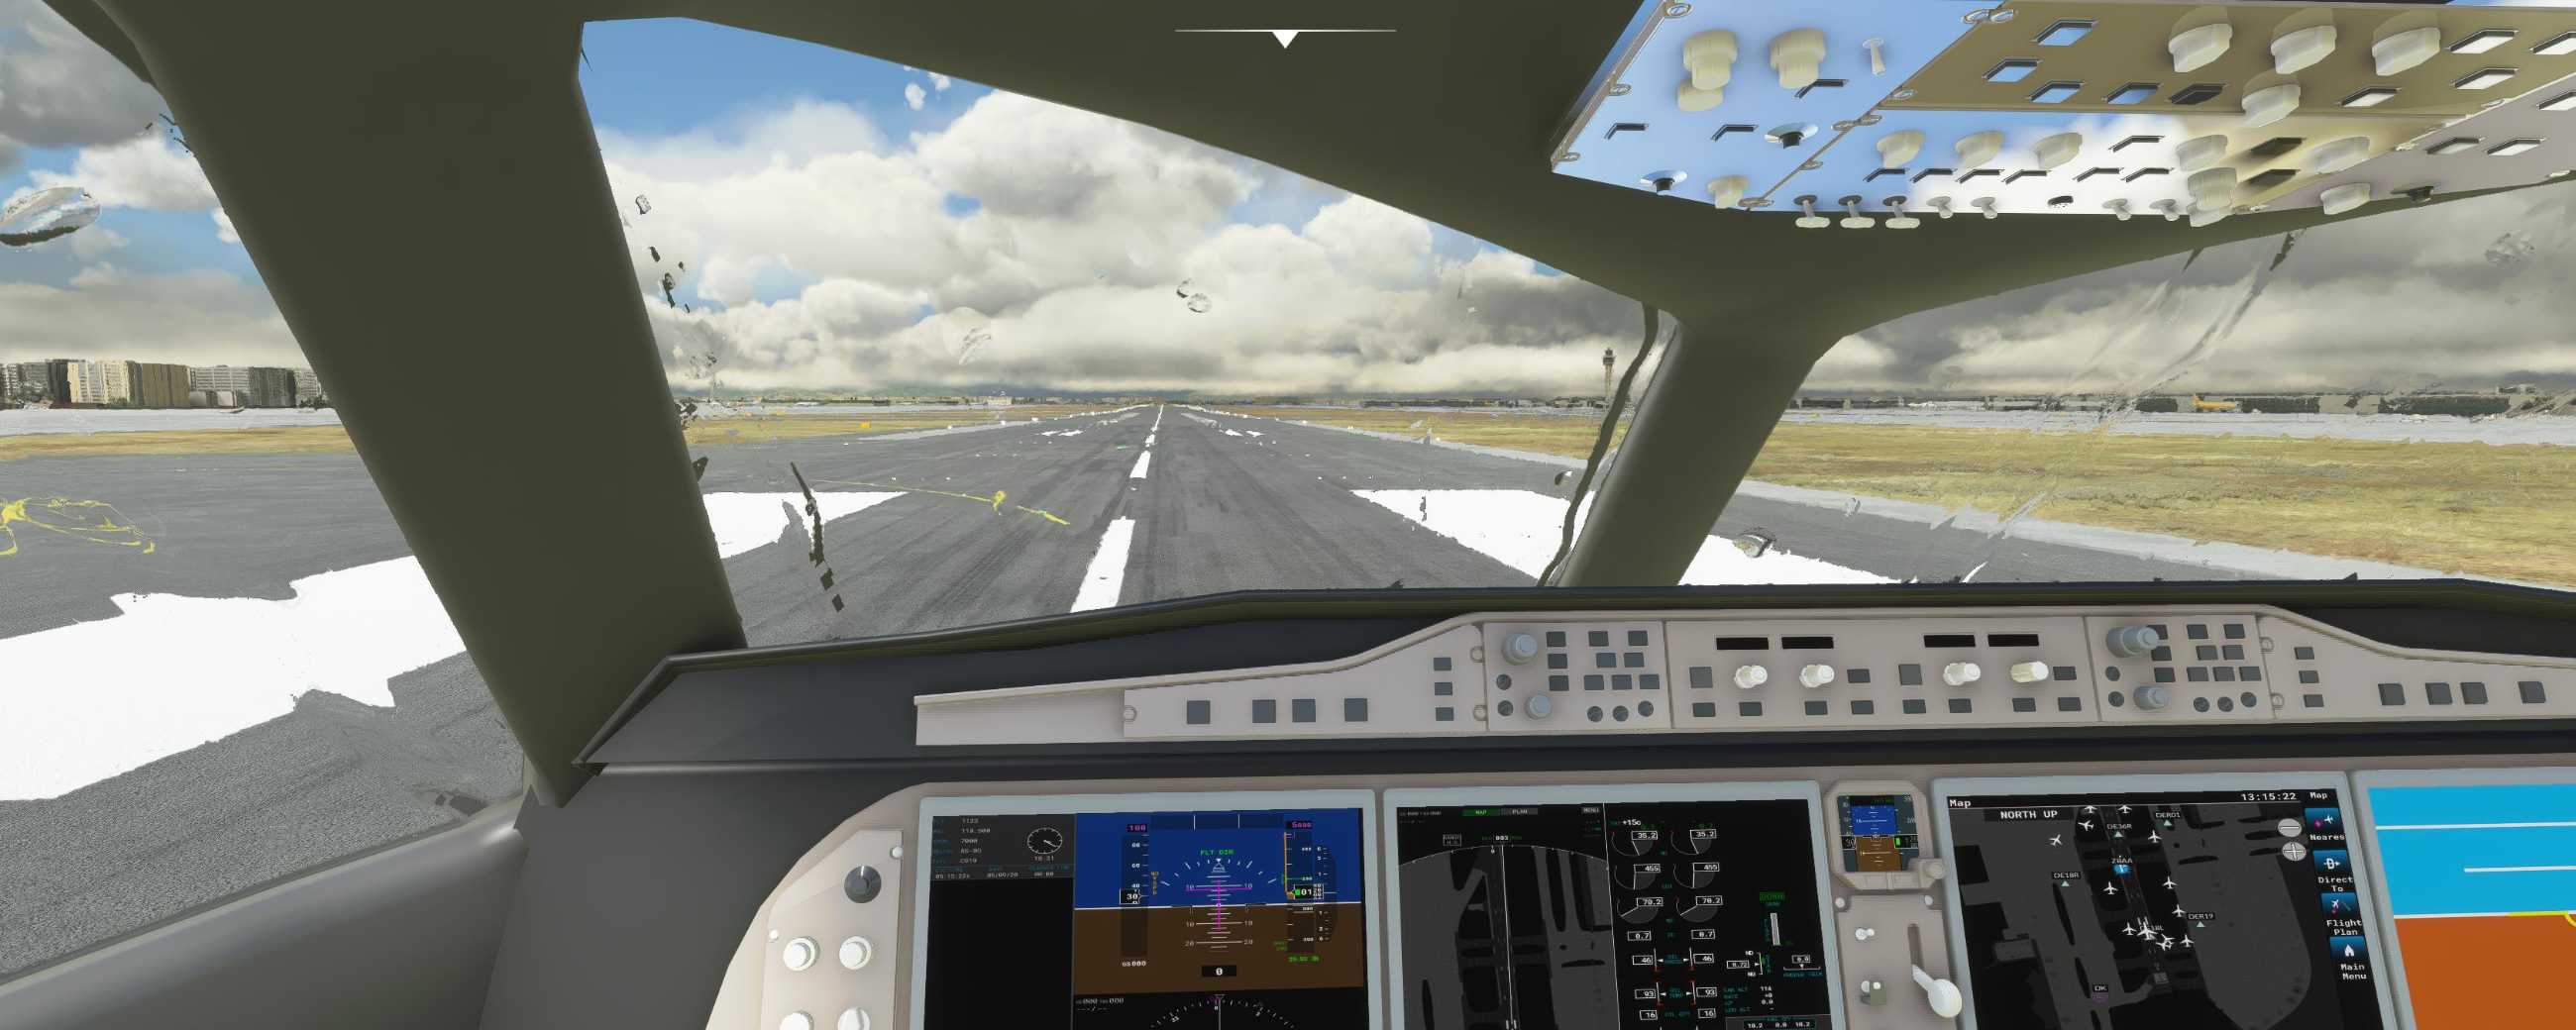 FYCYC-C919 国产大飞机机模 微软模拟飞行演示-6150 